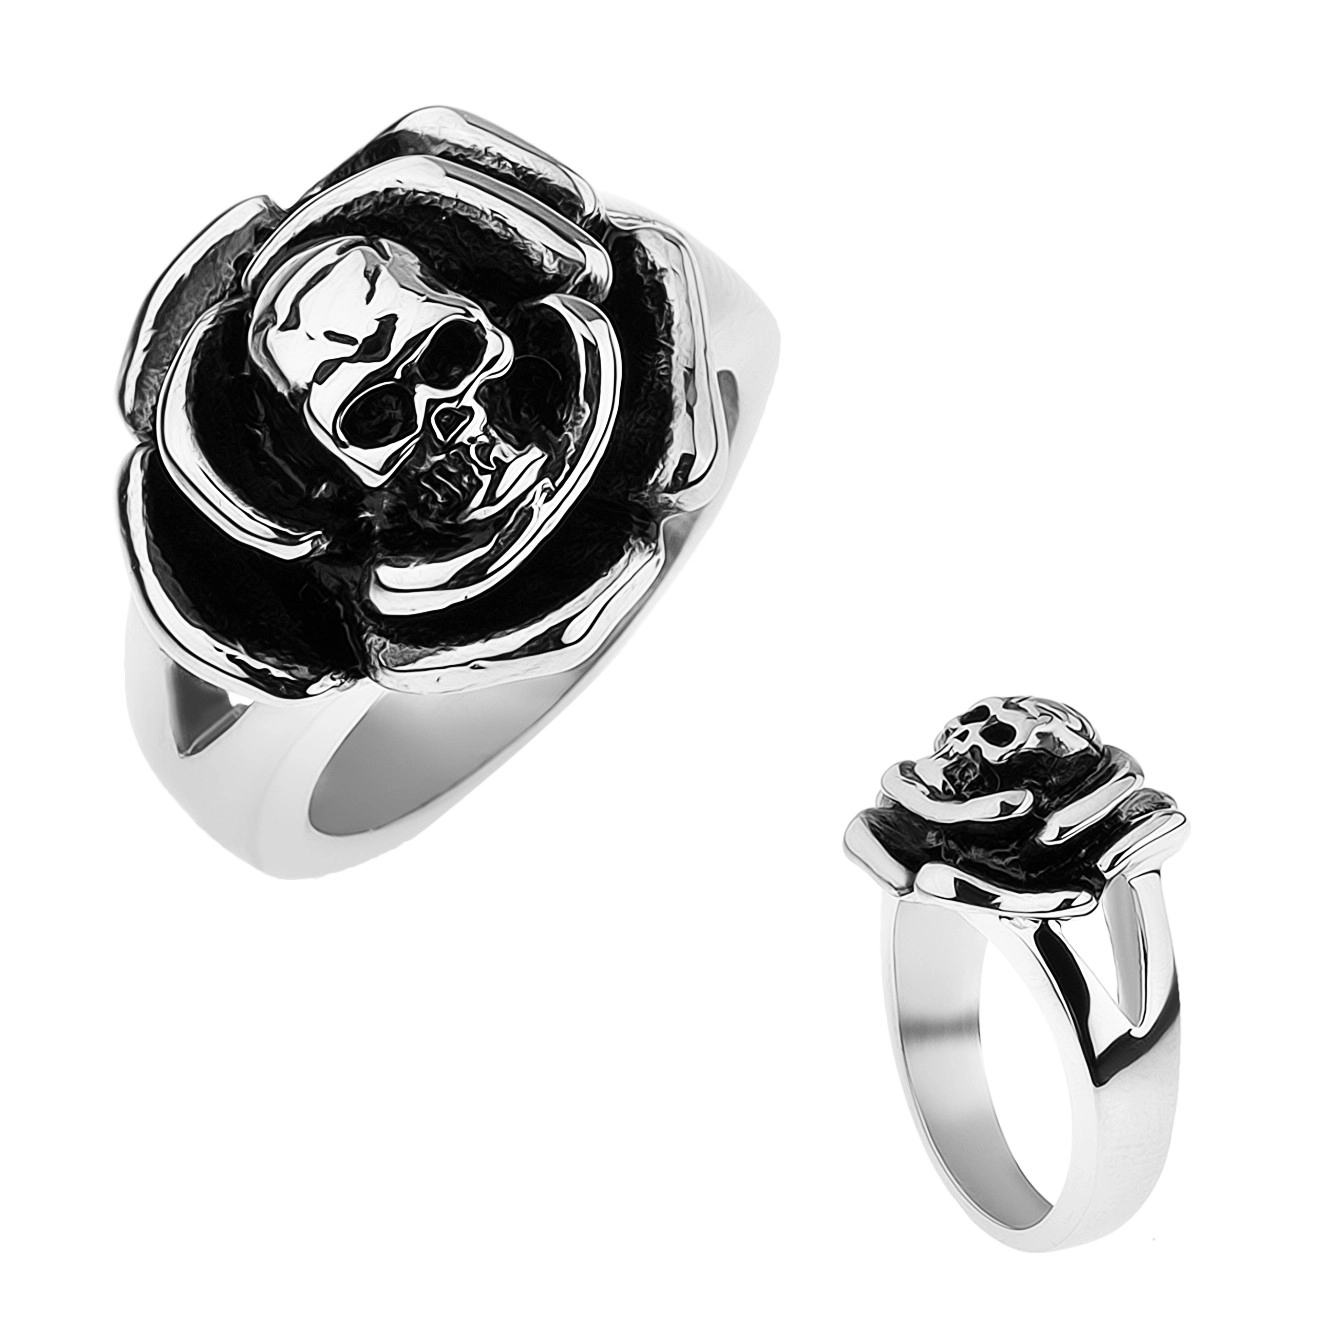 Patinovaný oceľový prsteň, ruža s lebkou v strede, rozdvojené ramená - Veľkosť: 60 mm